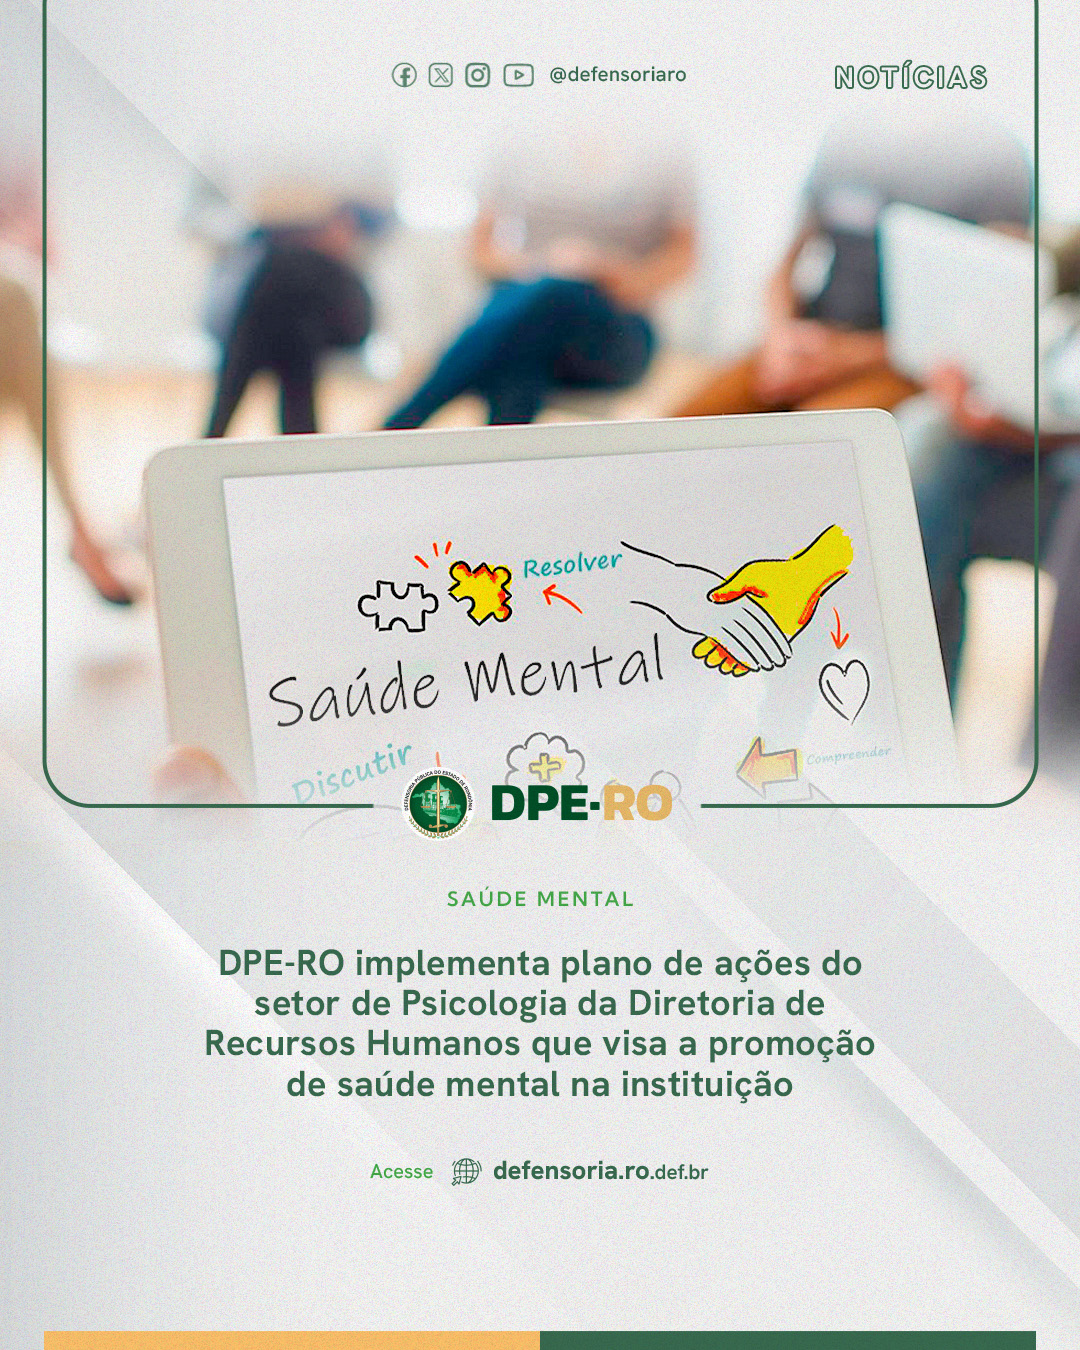 DPE-RO implementa plano de ações do setor de Psicologia da Diretoria de Recursos Humanos que visa a promoção de saúde mental na instituição